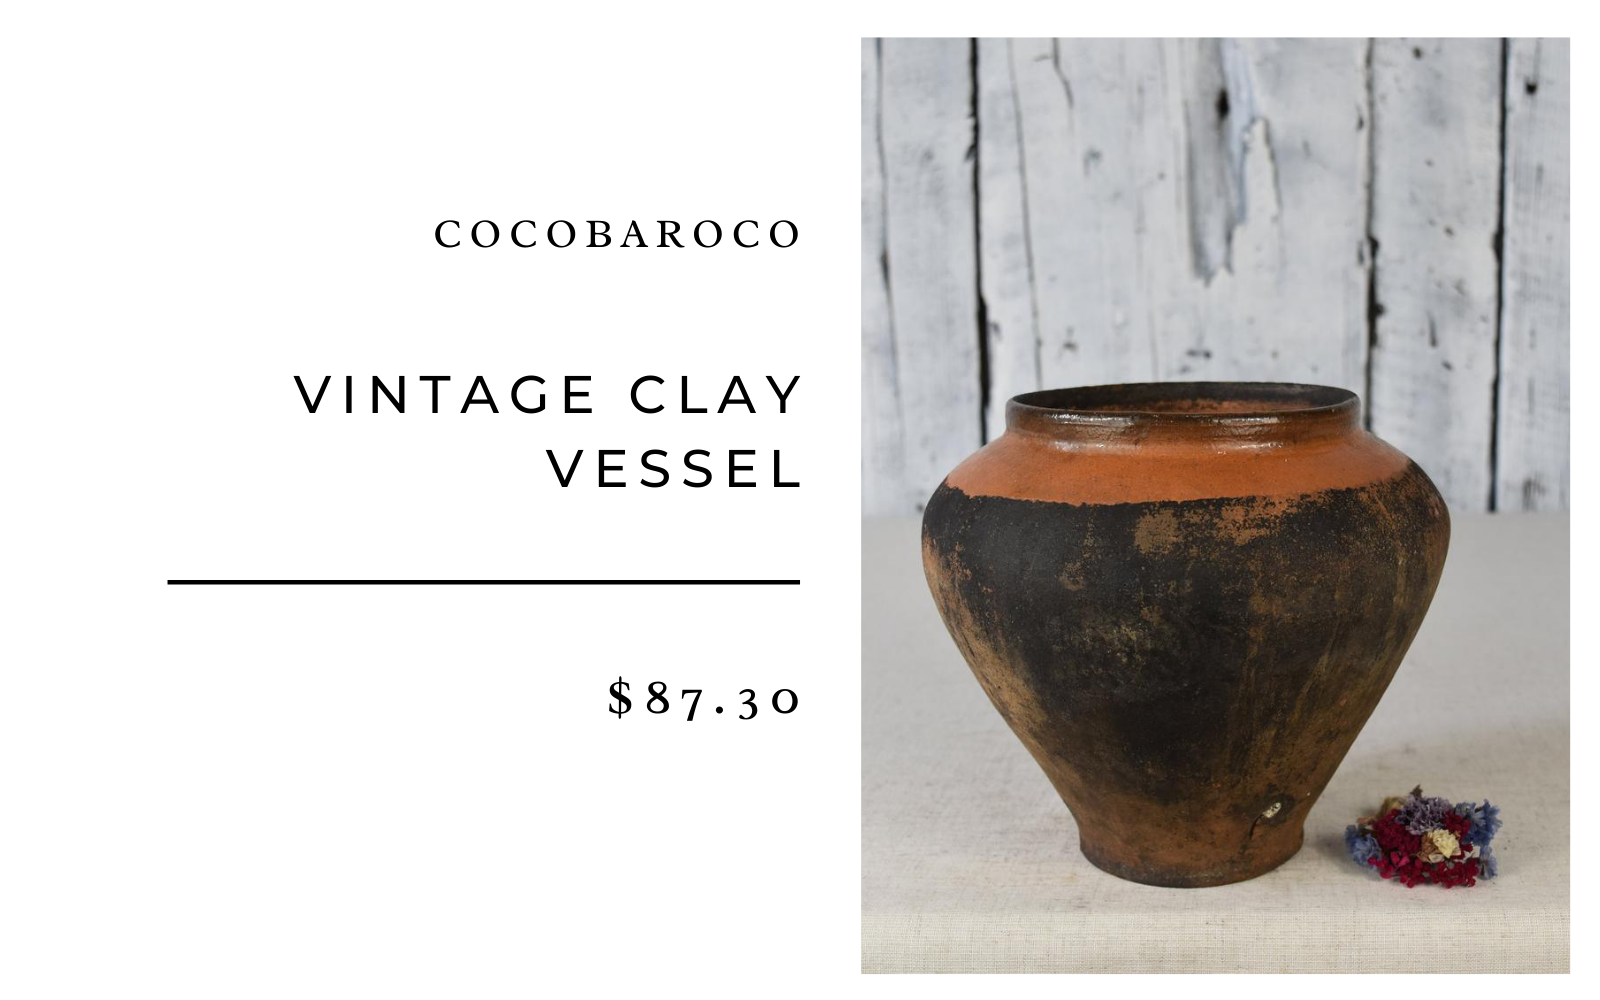 Cocobaroco Vintage Clay Vessel